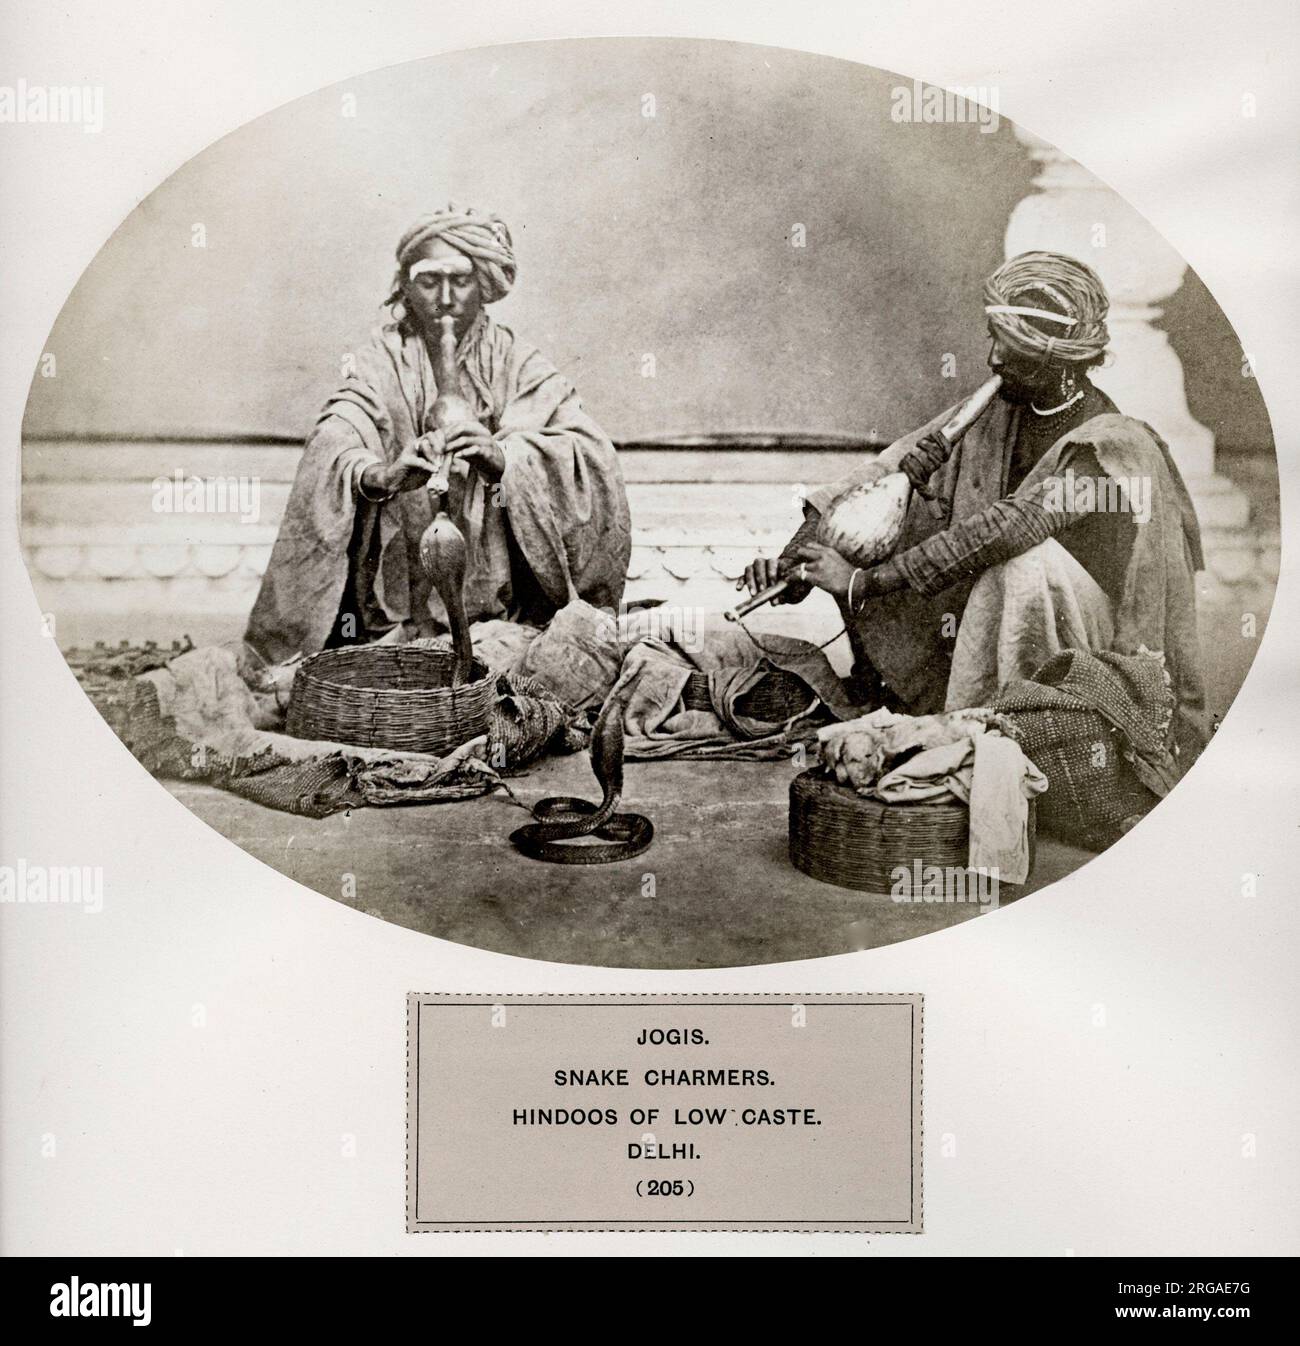 El pueblo de la India: Una serie de ilustraciones fotográficas, con letras descriptivas, de las razas y tribus del Hindustan - publicado en la década de 1860s bajo la orden del virrey, Lord Canning - Jogis, encantadores de serpientes, hindúes de casta baja, Delhi. Hindú. Foto de stock